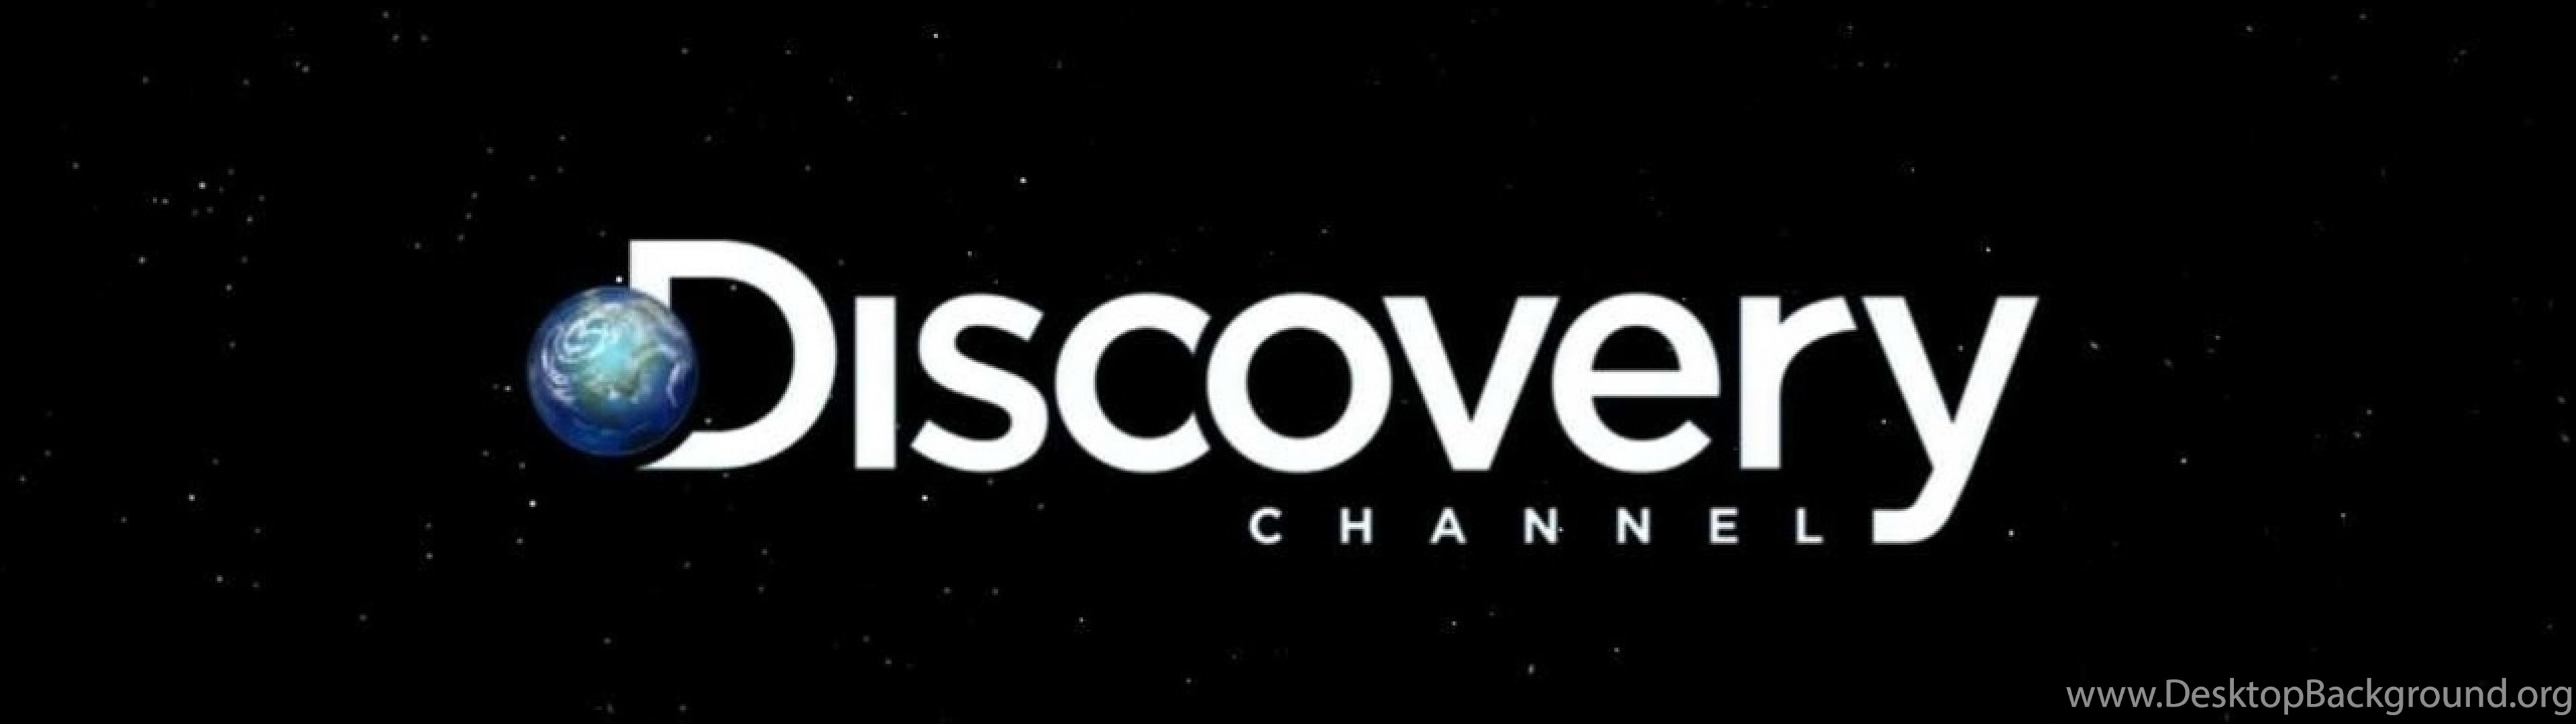 Радио дискавери. Discovery channel логотип. Discovery канал. Discovery надпись. Discovery картинки.